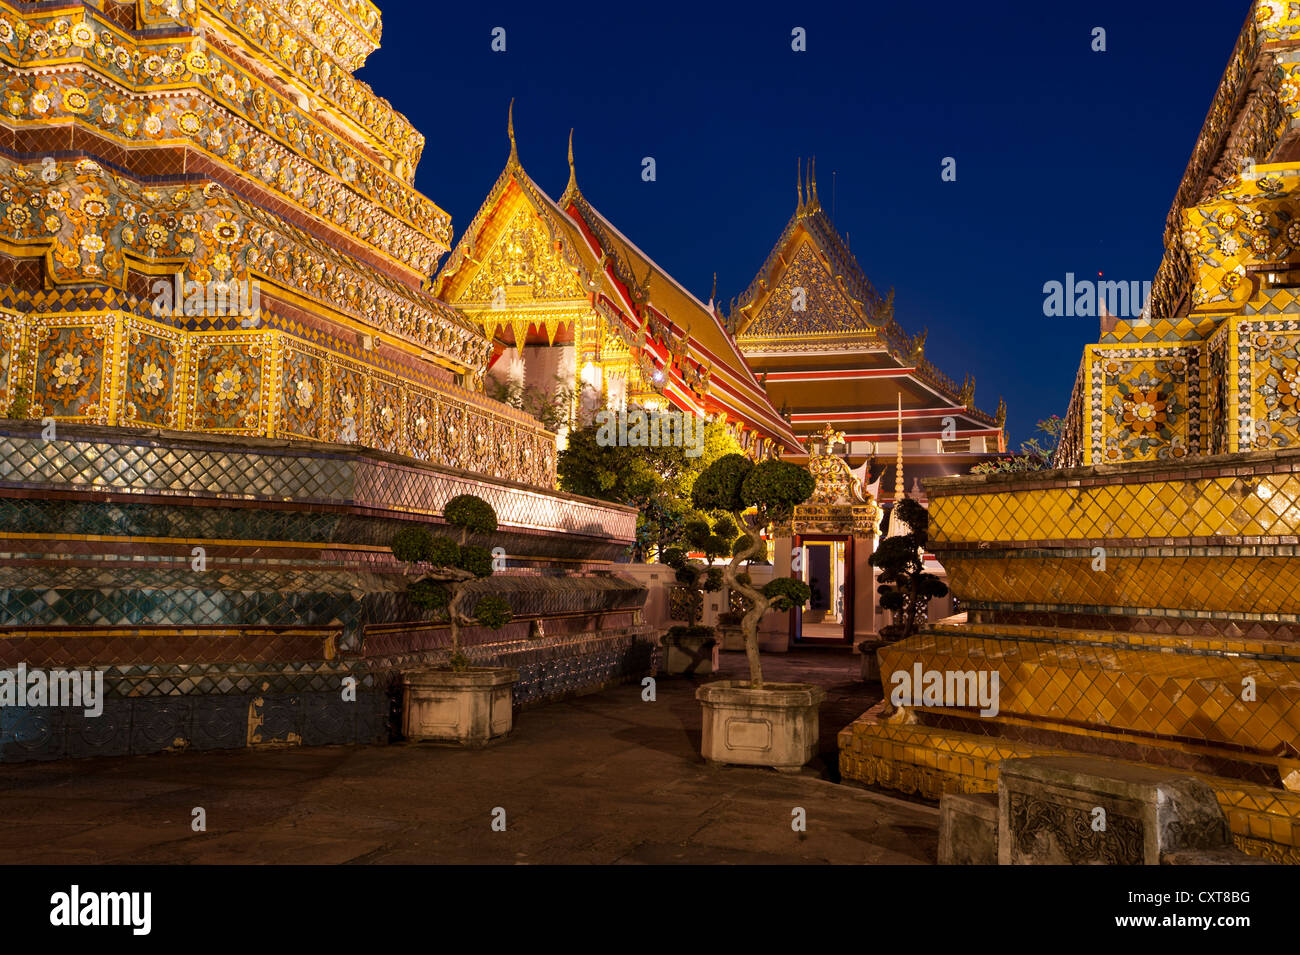 Large Chedis of the Phra Maha Chedi Si Ratchakan group, Wat Pho or Wat Phra Chetuphon, at dusk, Bangkok, Thailand, Asia Stock Photo